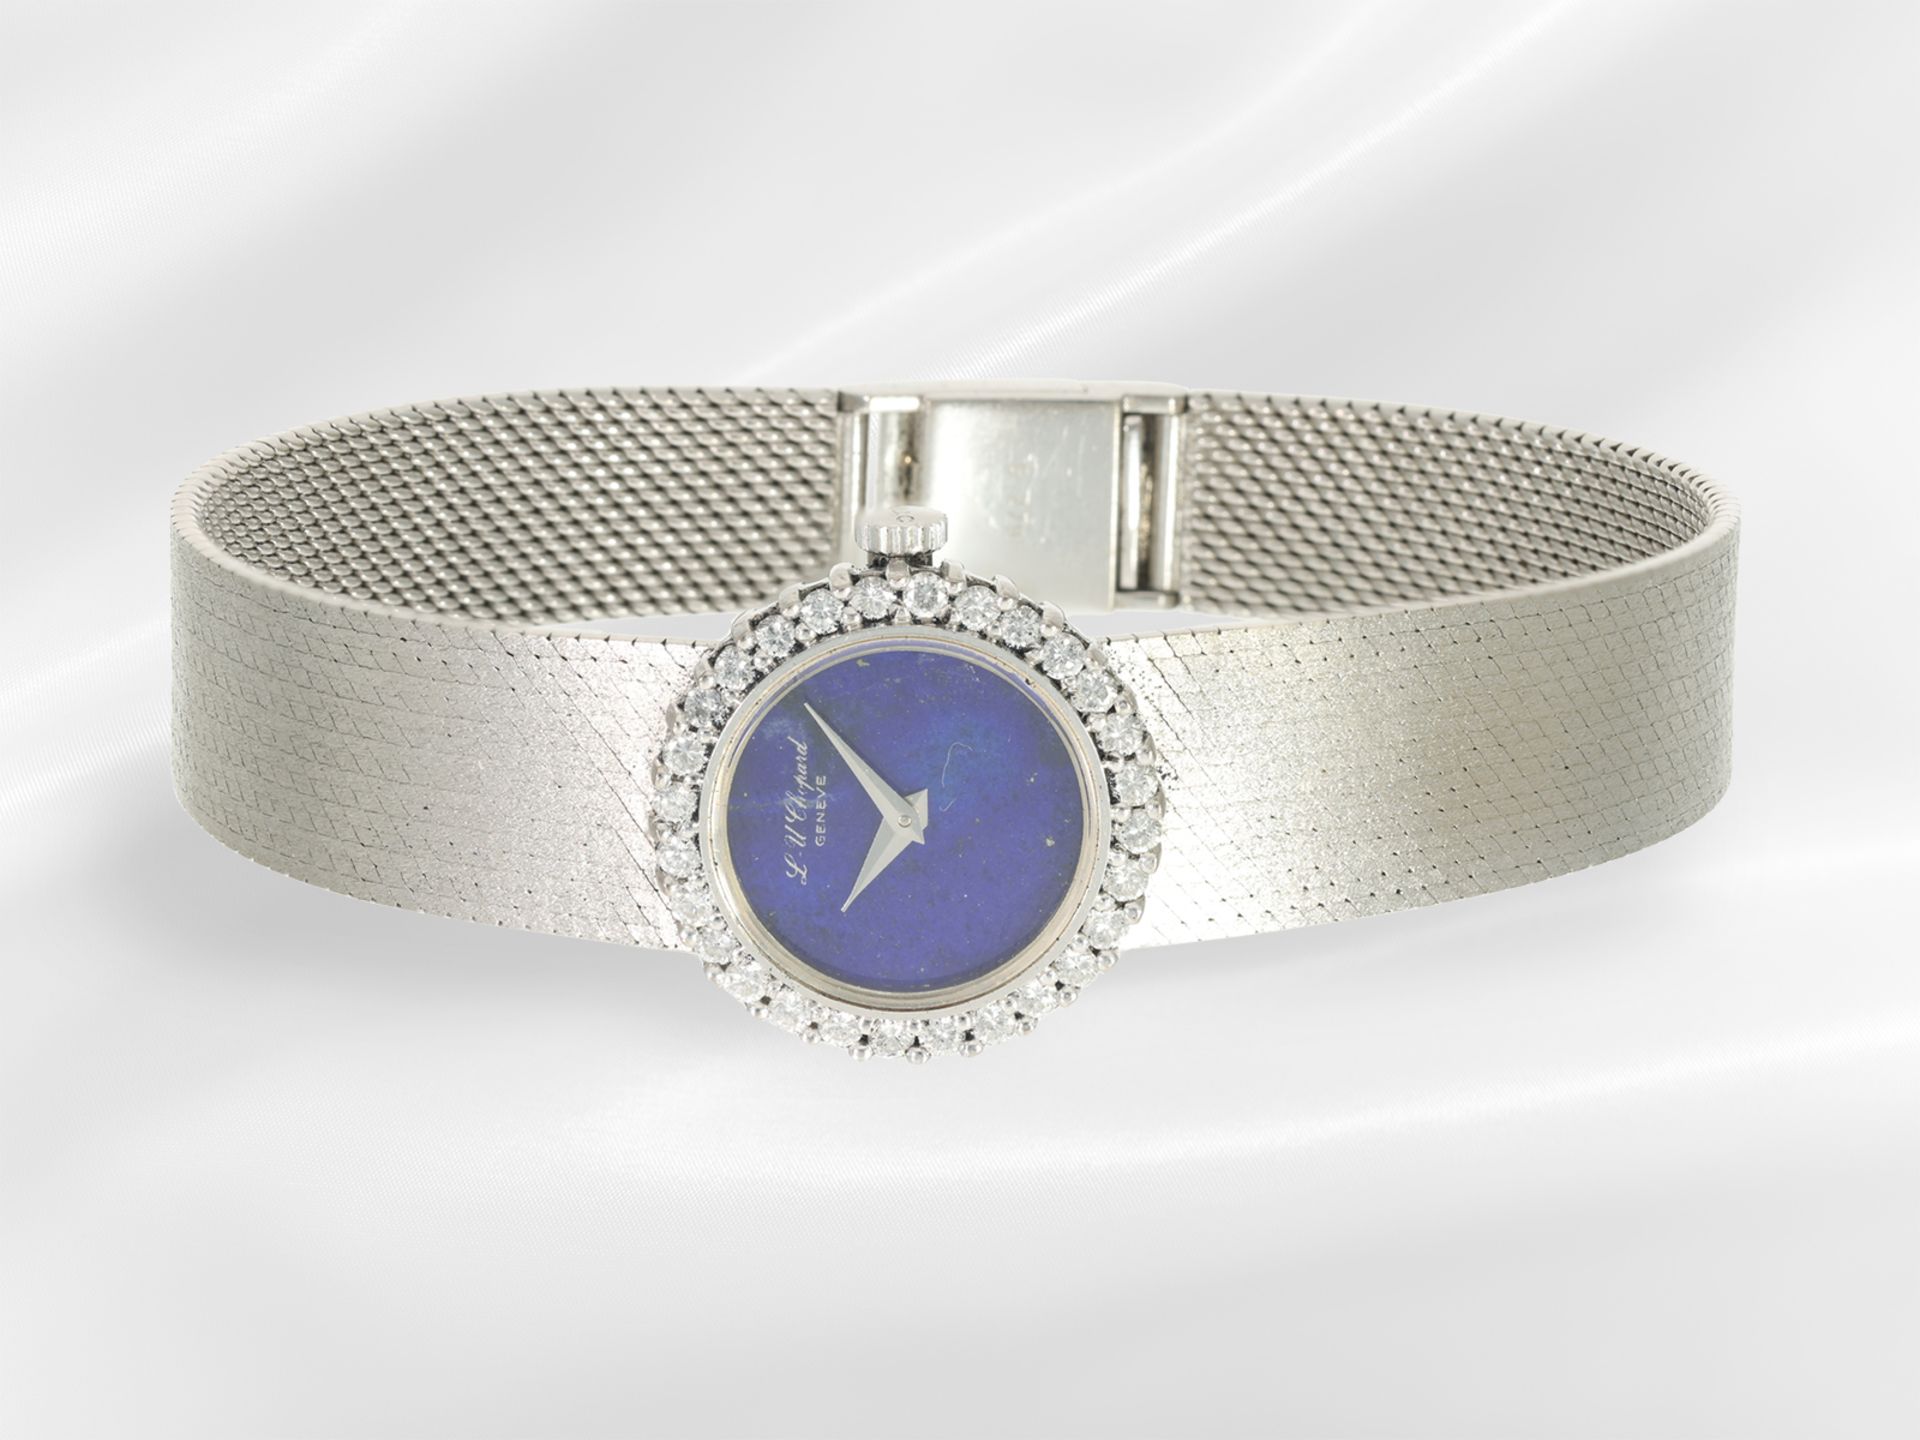 Armbanduhr: luxuriöse Damenuhr von Chopard mit Brillantlünette und Lapislazuli- Zifferblatt - Bild 2 aus 4